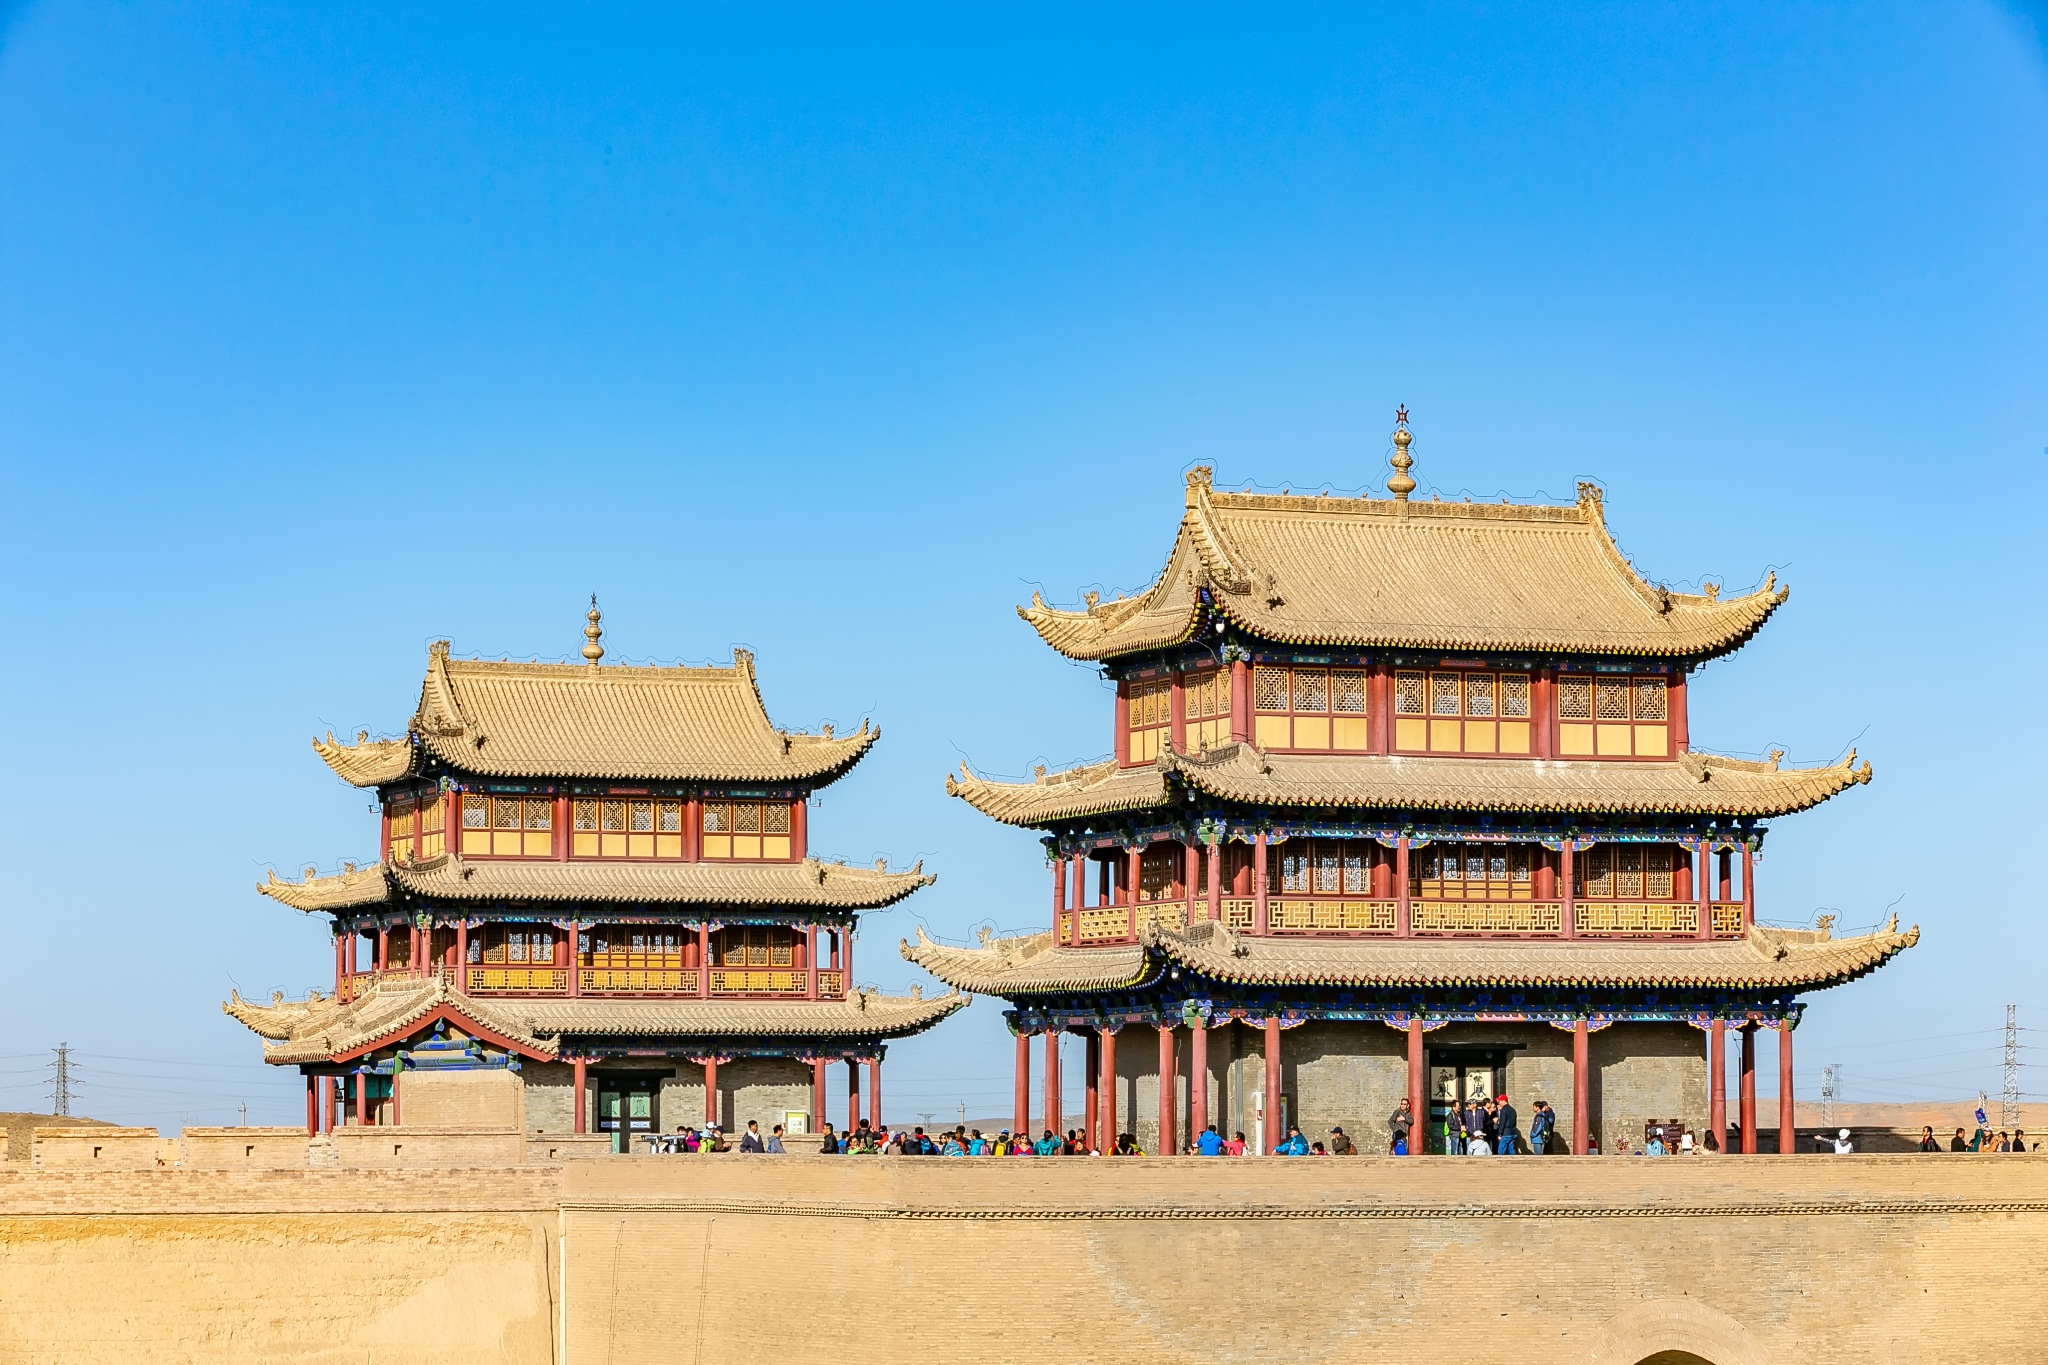 Jiayuguan, Gansu